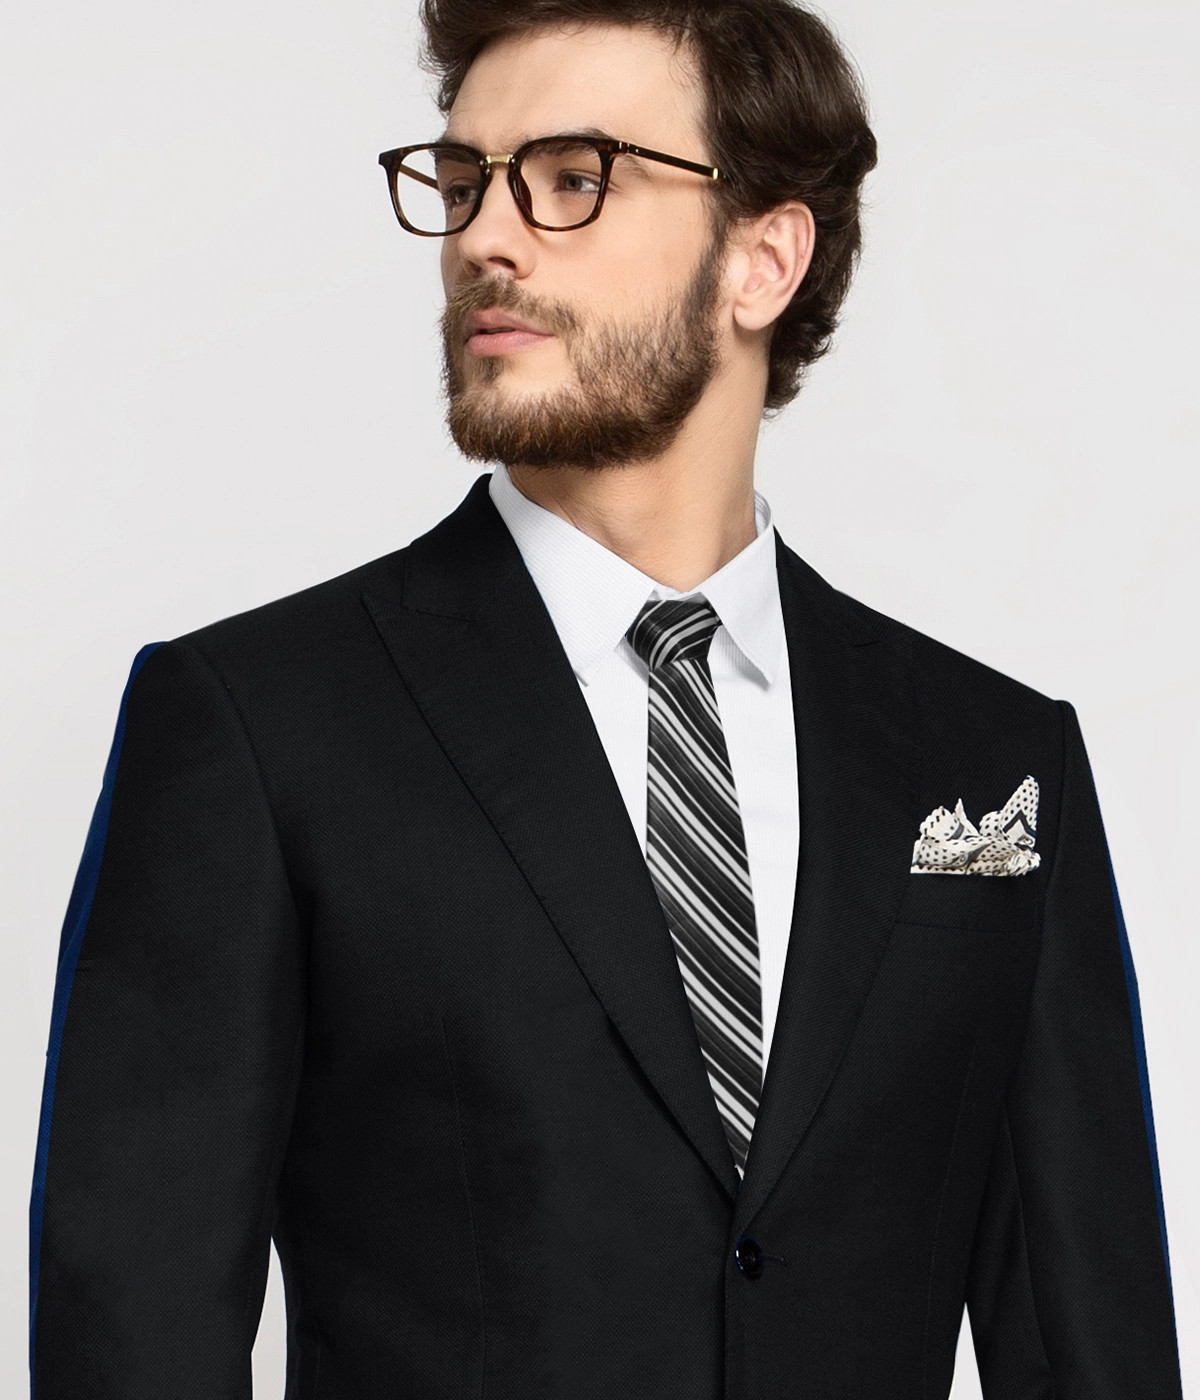 Tailor's Stretch Blend Suit, Classic Black